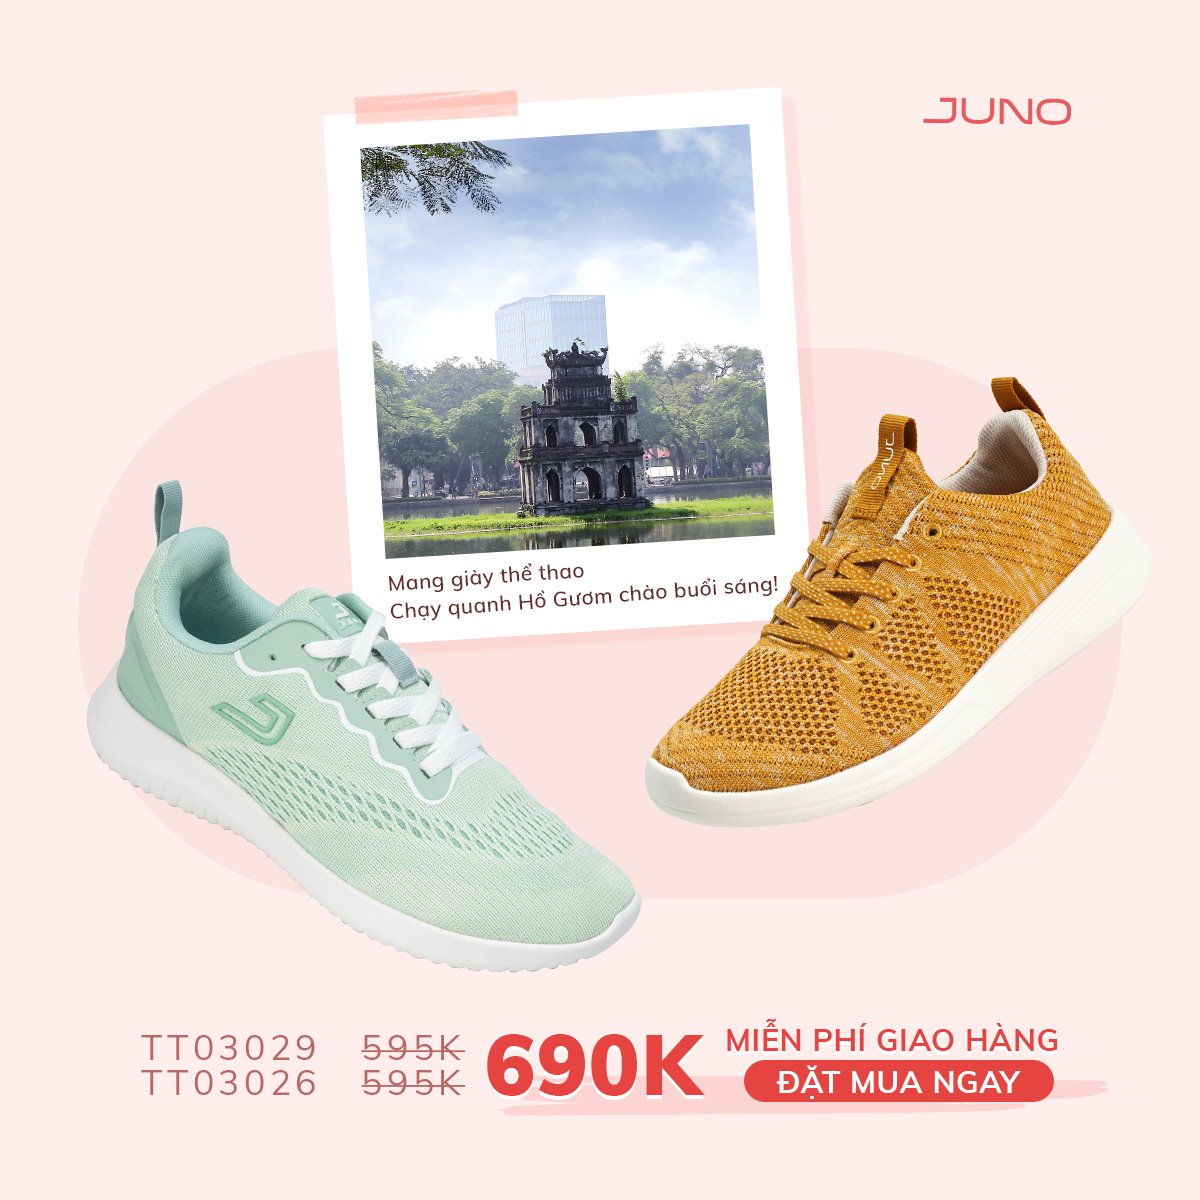 Top 8 cửa hàng giày dép đẹp nhất ở Hà Nội -  Giày Juno